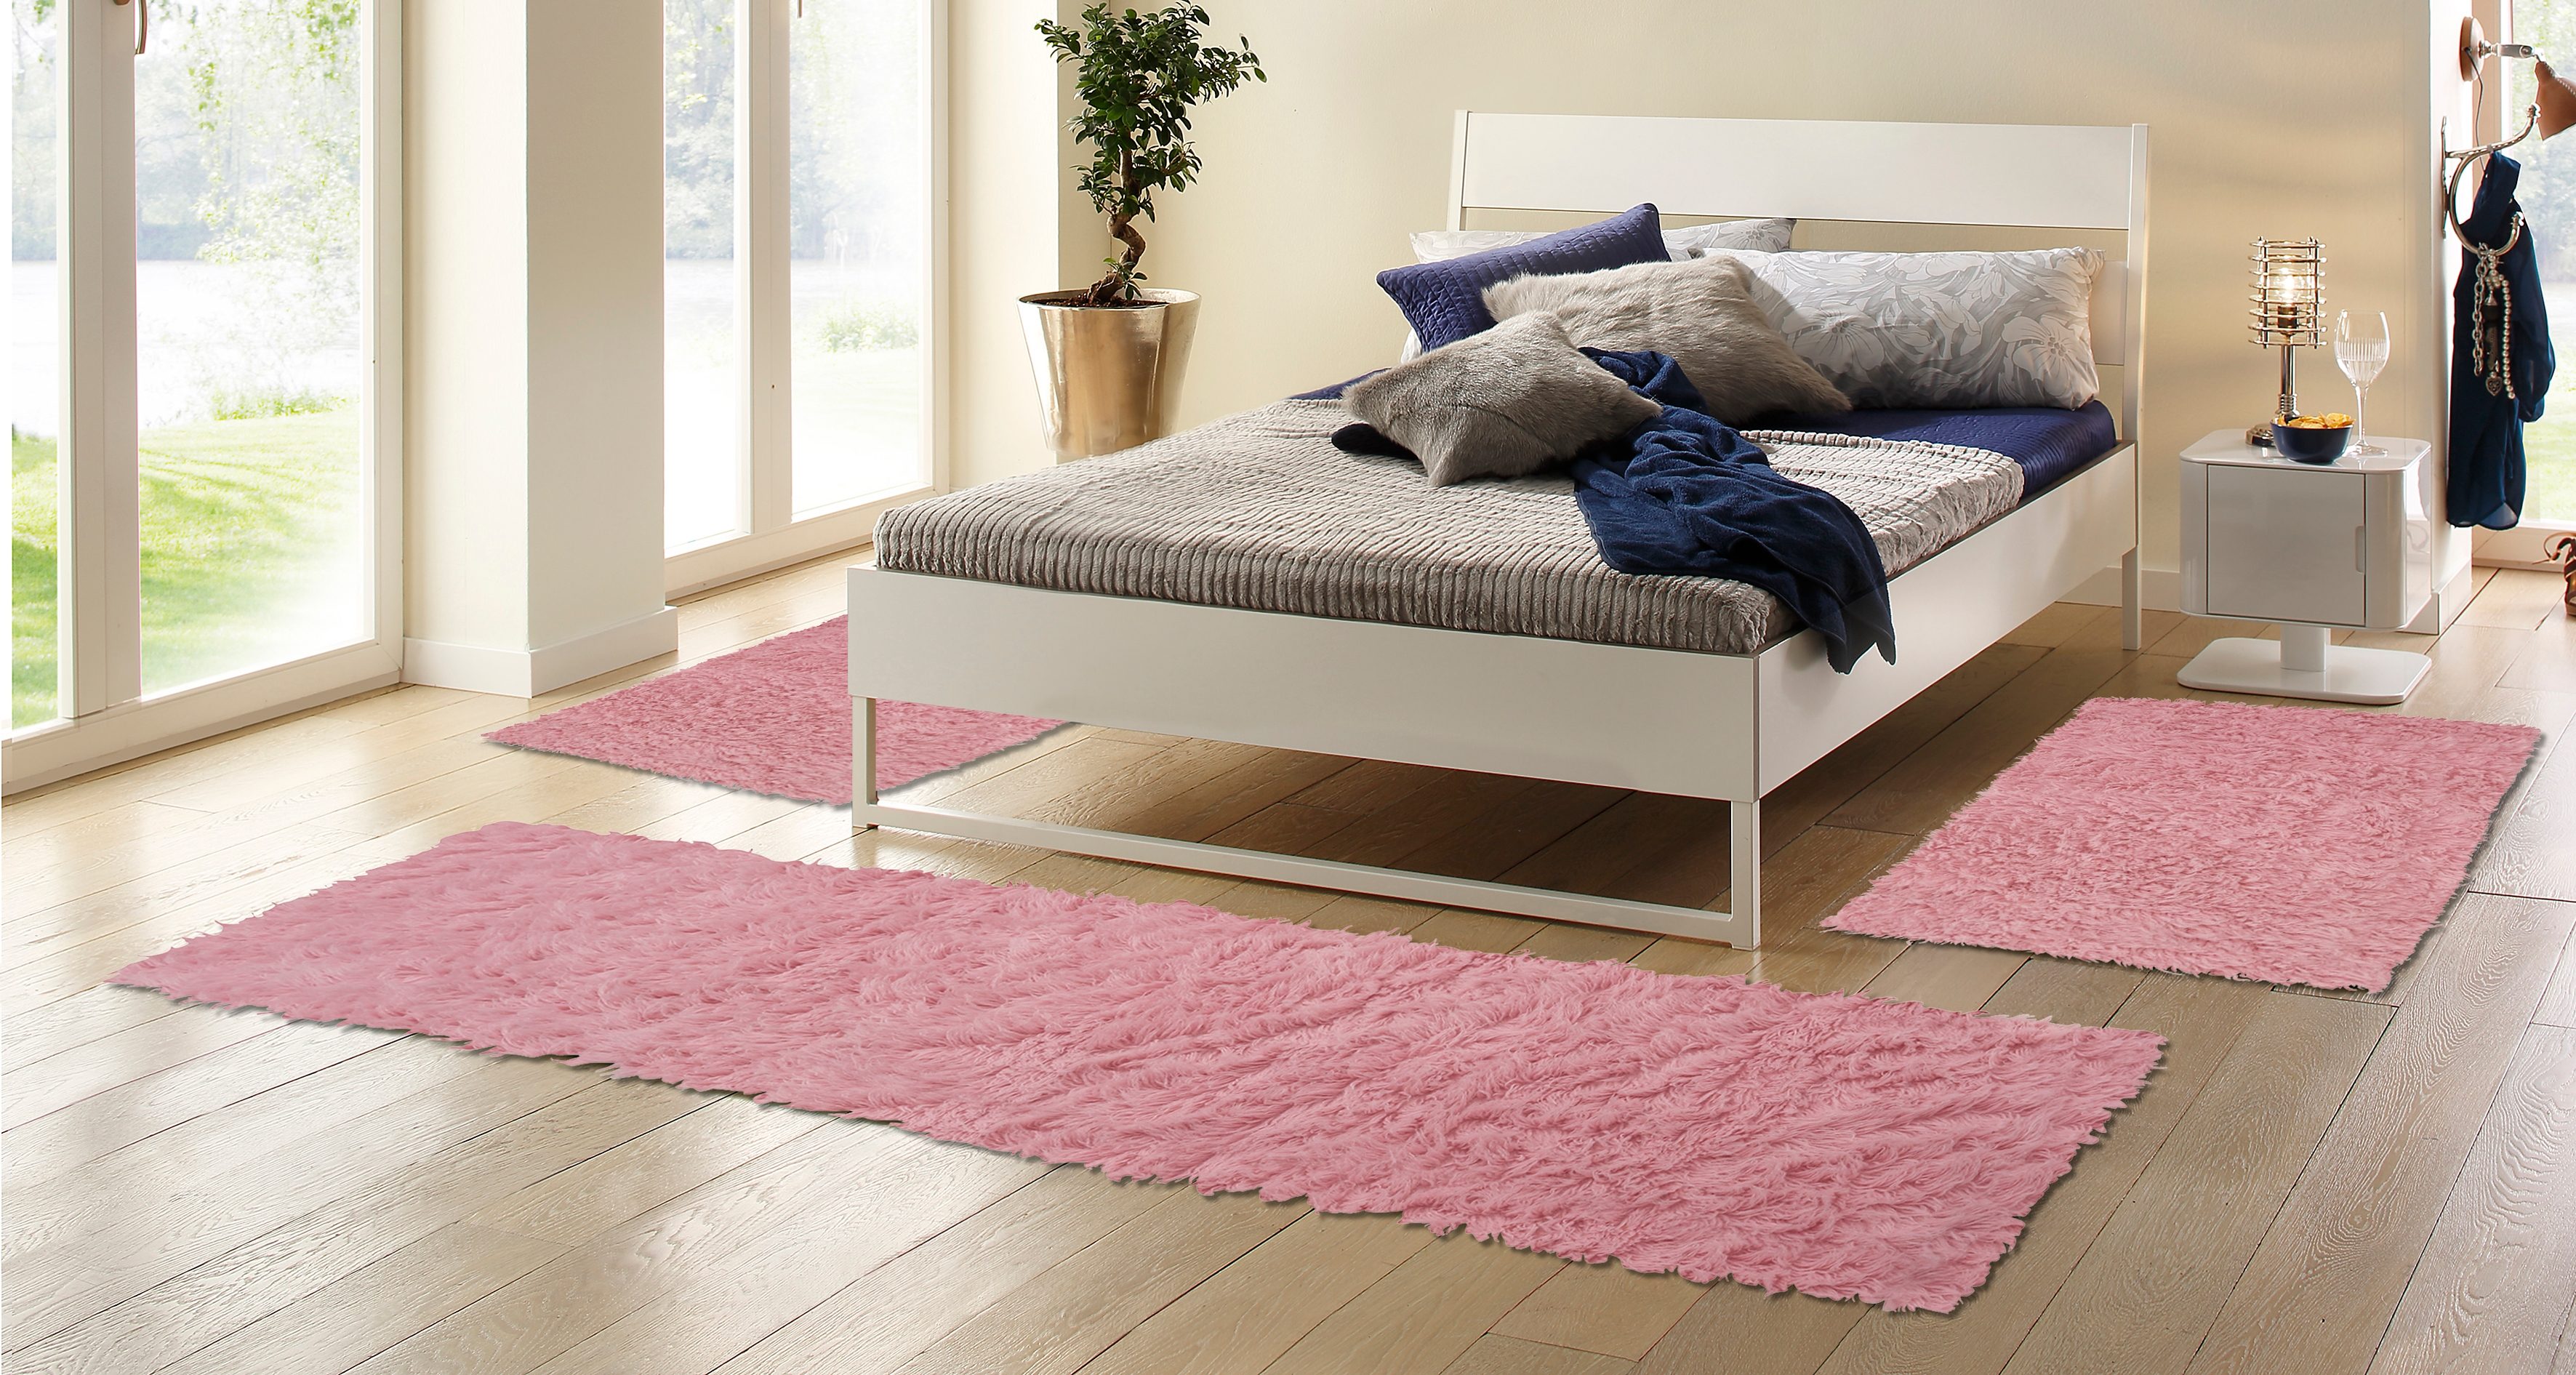 Böing Carpet Bettumrandung "Flokati 1500 g", (3 tlg.), Bettvorleger, Läufer-Set für das Schlafzimmer, Uni Farben, reine Wolle, handgewebt